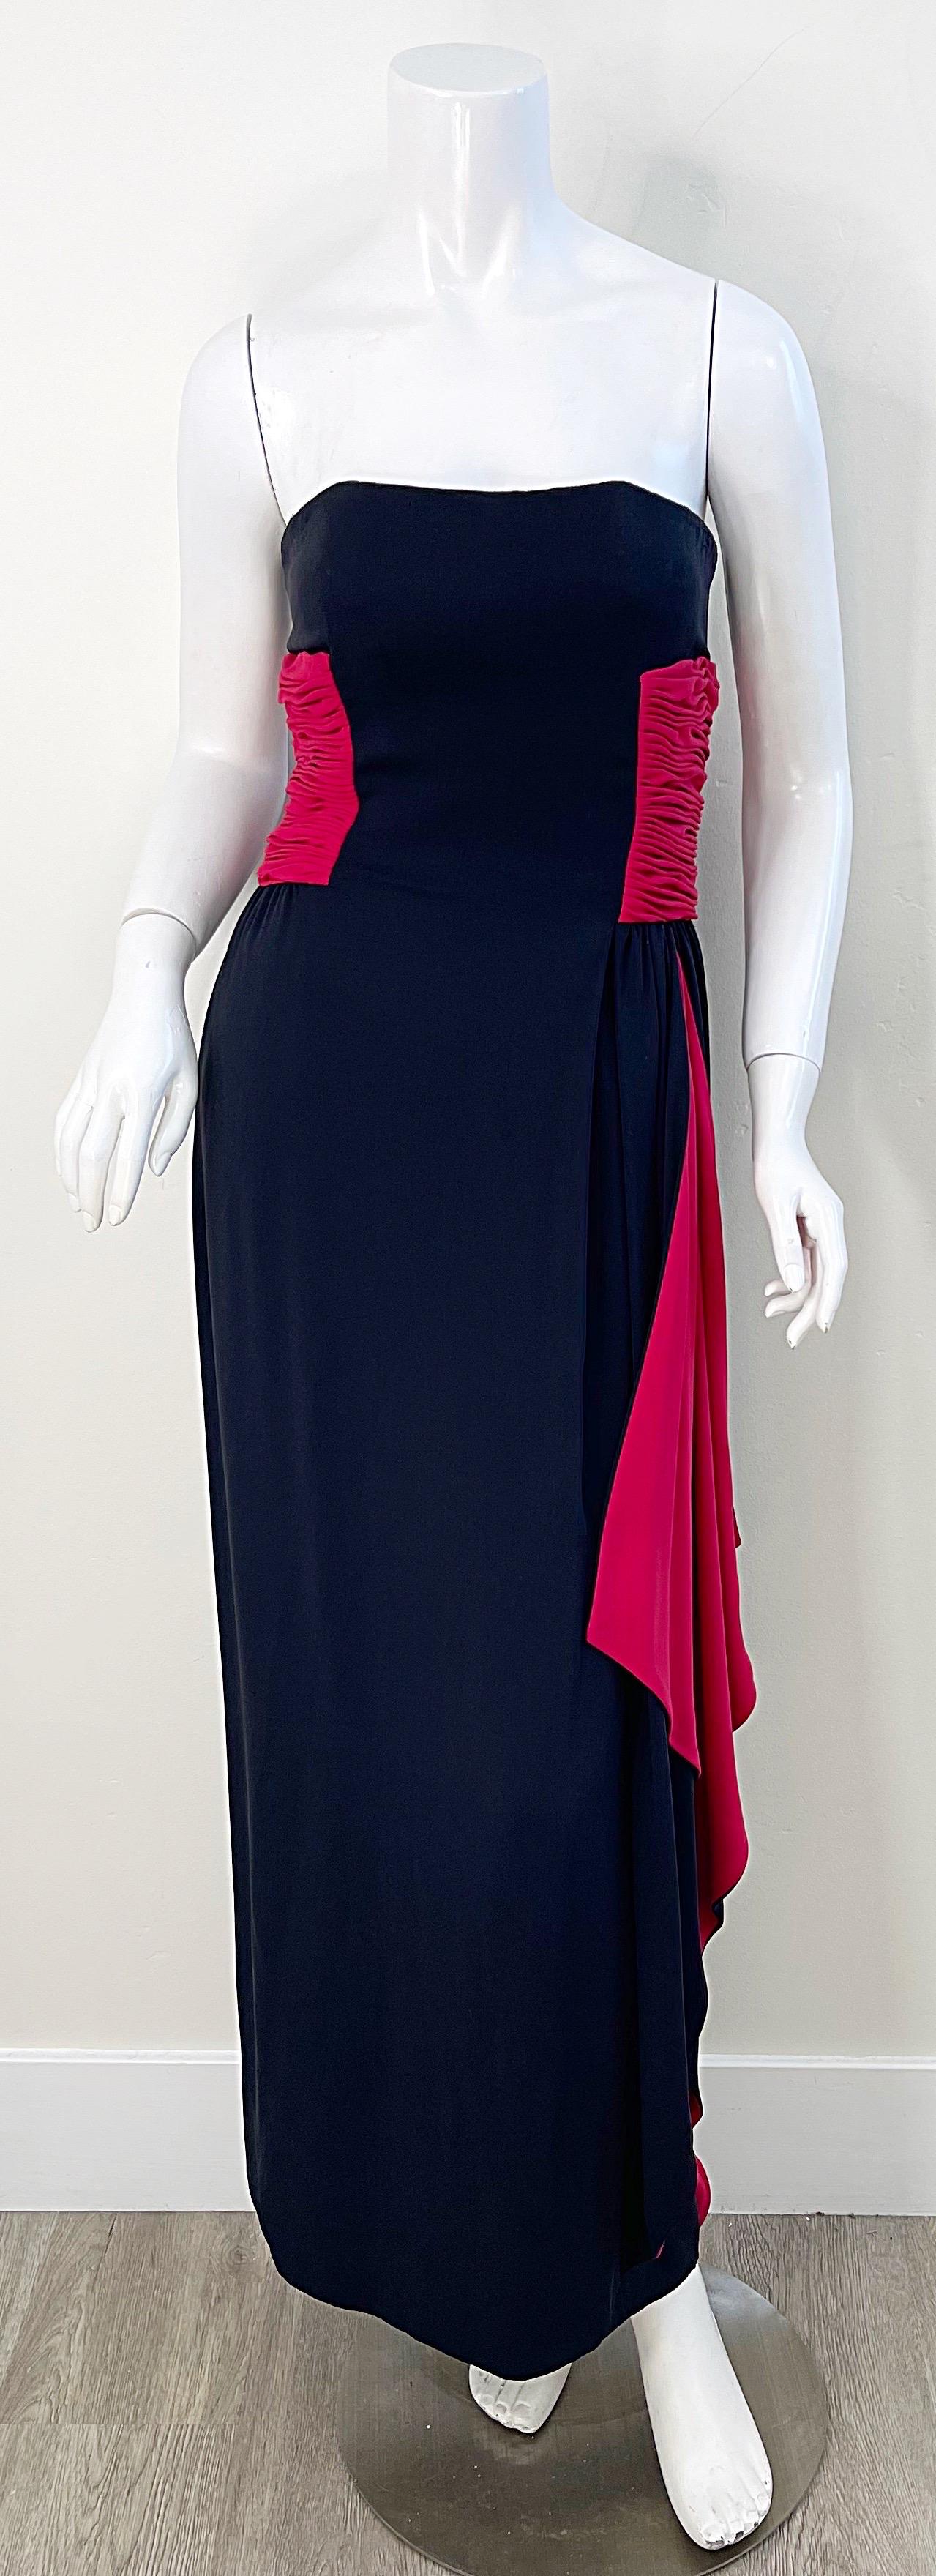 Schönes und zeitloses trägerloses Abendkleid aus schwarzem und rotem Seidenjersey von VALENTINO aus den 1980er Jahren! Dieses Kleid hat so viel Liebe zum Detail. Hat ein eingebautes Korsett mit Knochen, um alles an seinem Platz zu halten. Die roten